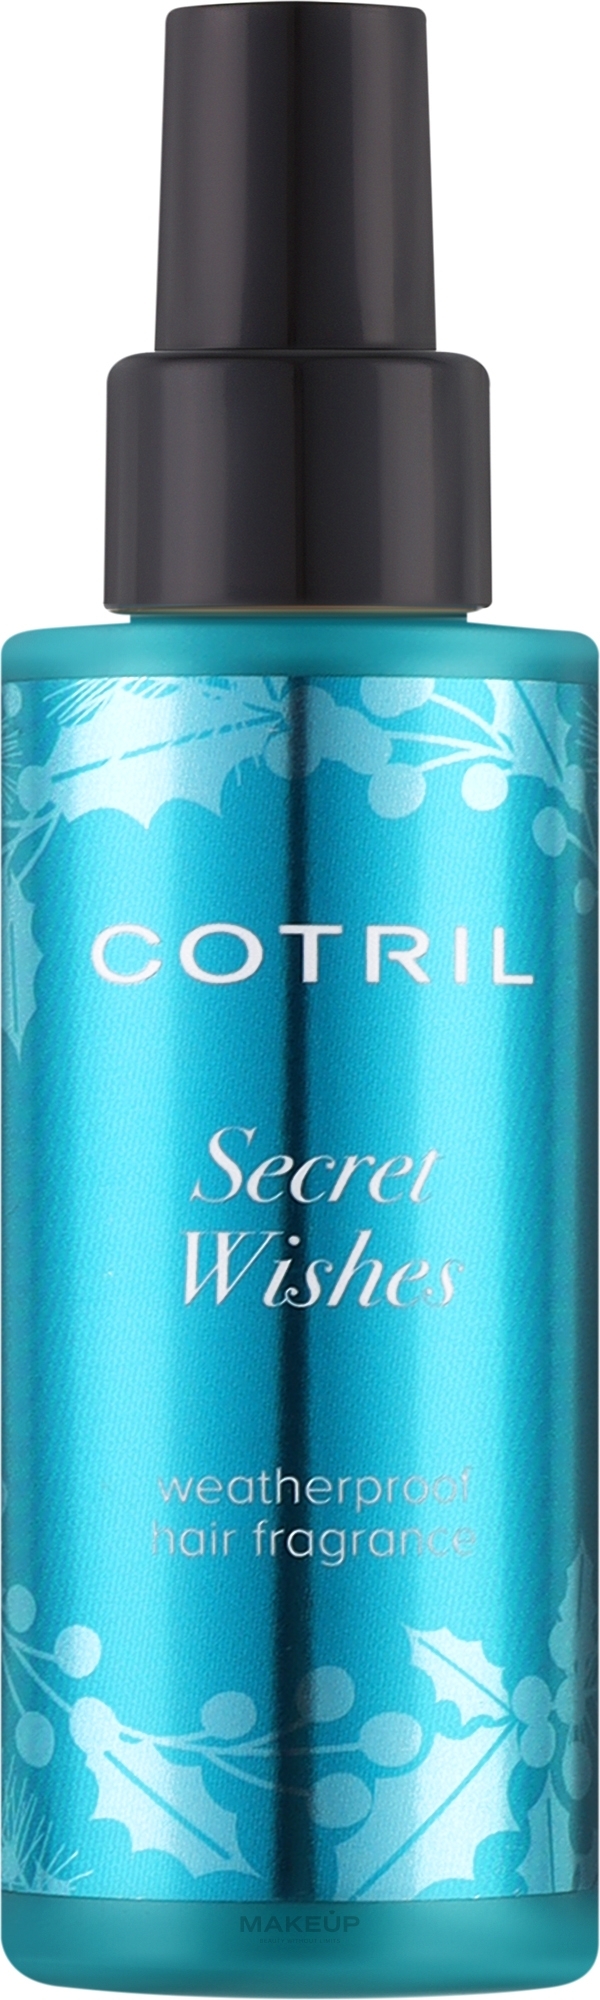 Ароматичний спрей для волосся - Cotril Secret Wishes Watherproof Hair Fragrance — фото 100ml